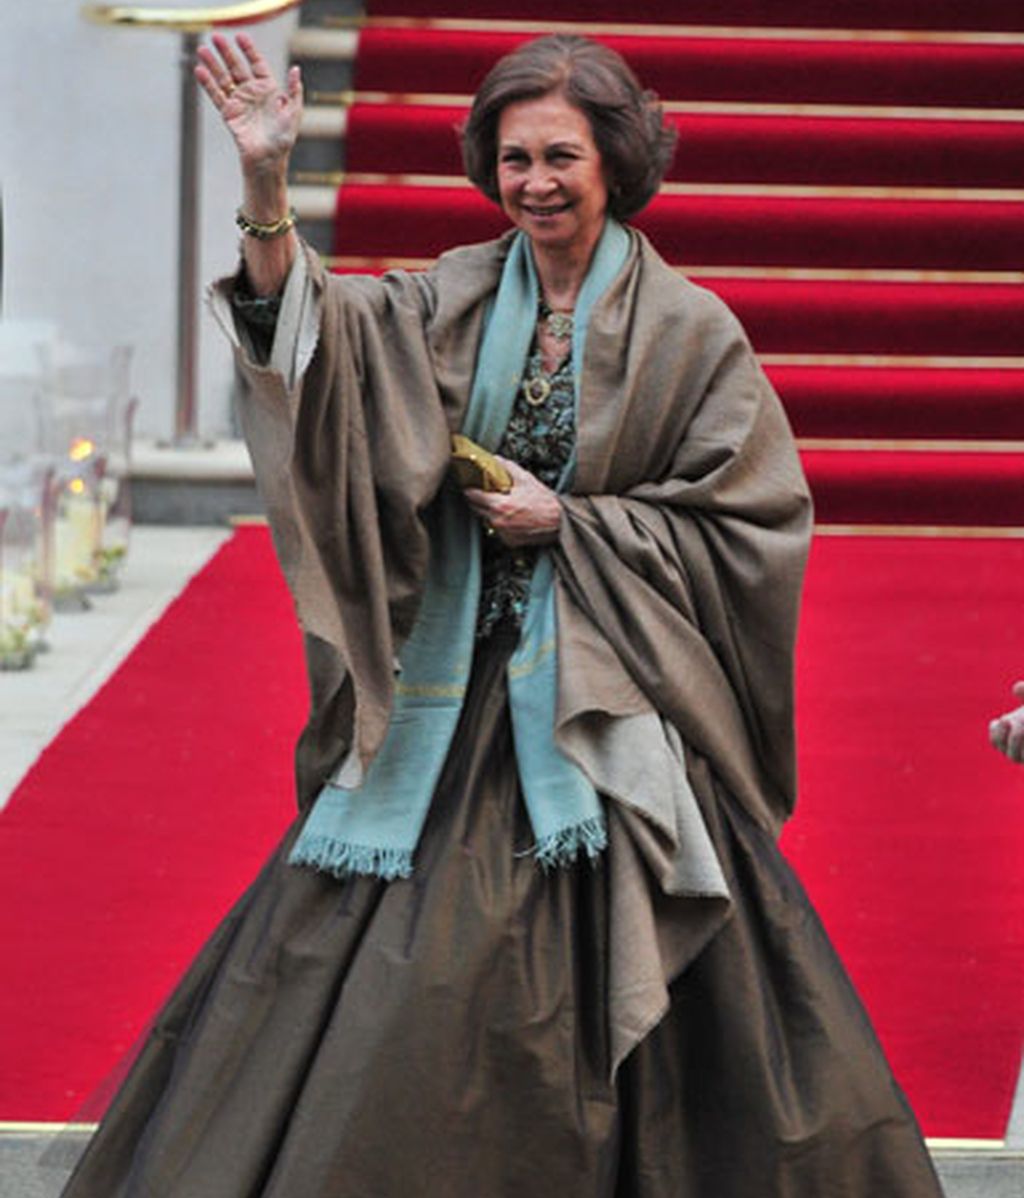 La Reina Sofía, arriesgada en el vestir